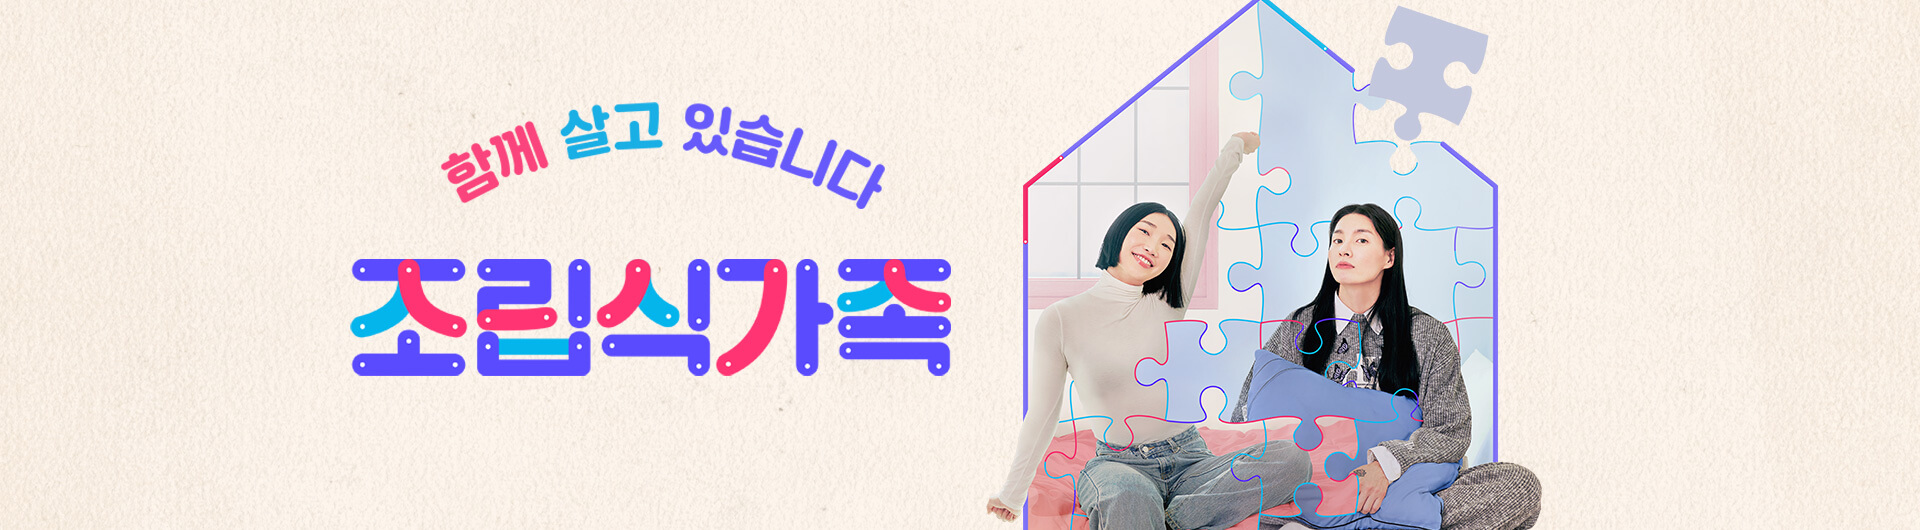 tvN 예능 프로그램&#39; - 조립식 가족이란?